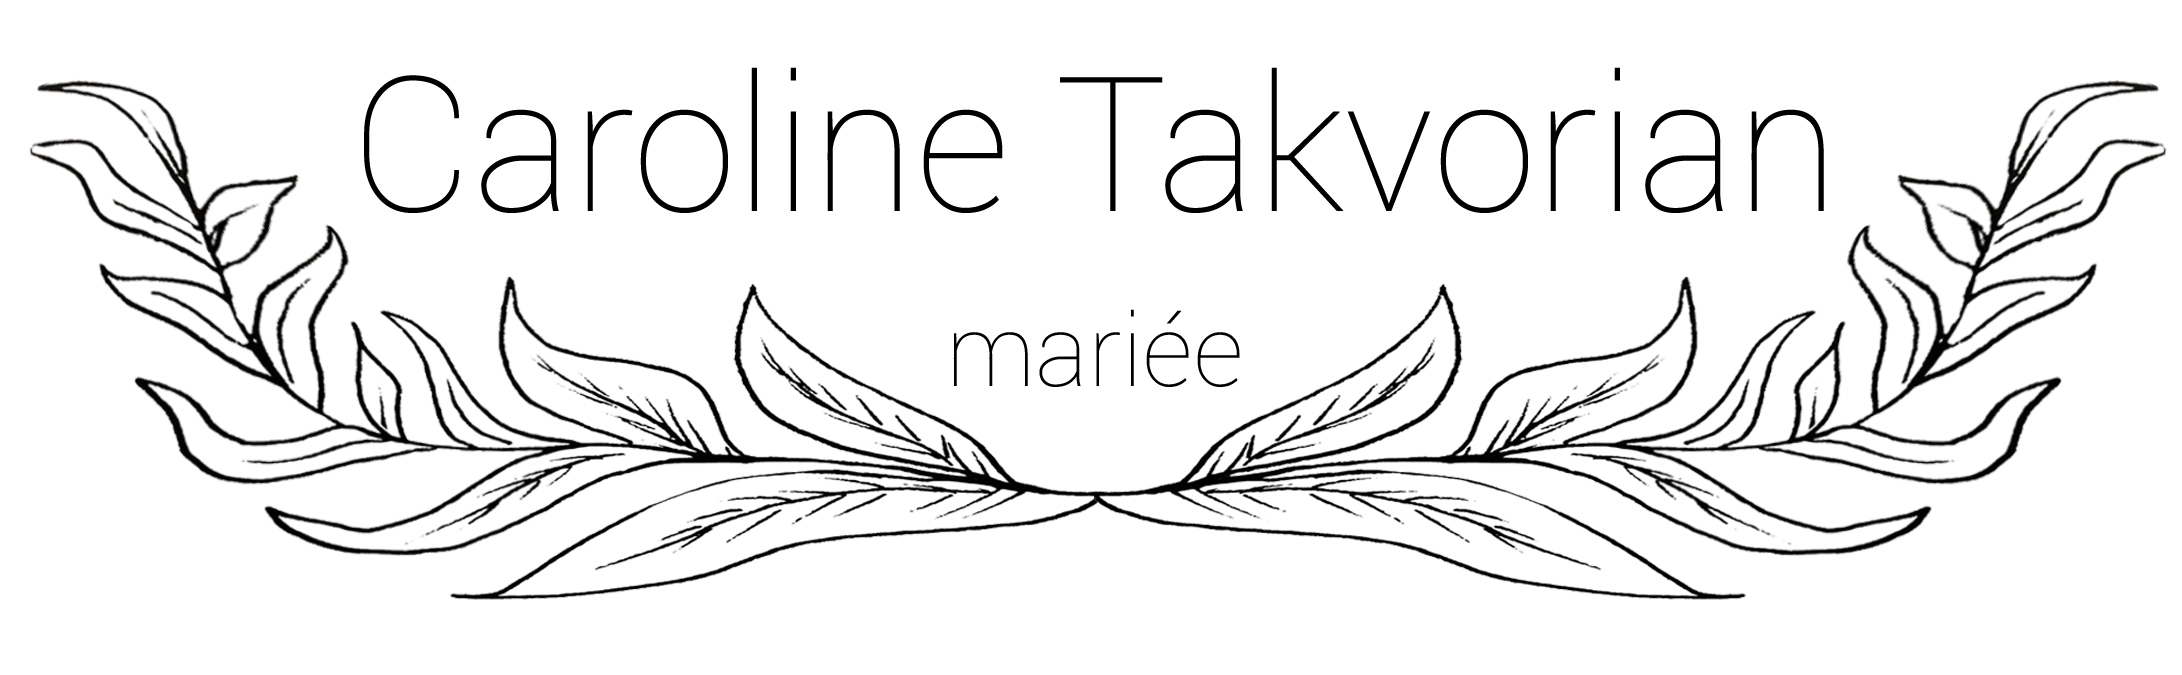 Un nouveau Logo pour Caroline Takvorian !